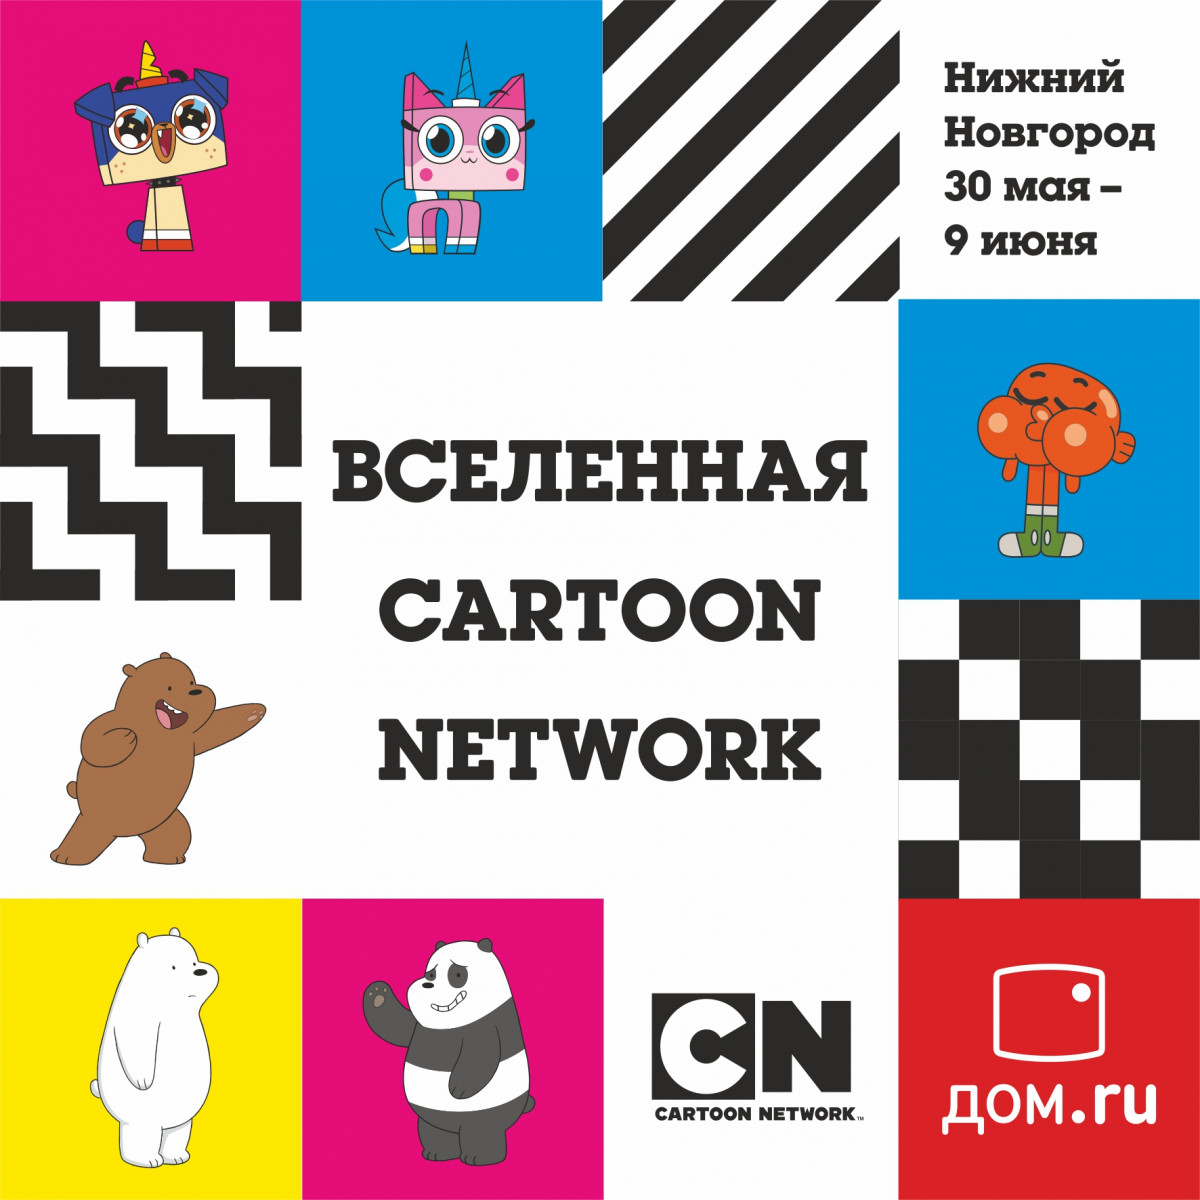 Нижегородцы переместятся во «Вселенную Cartoon Network»